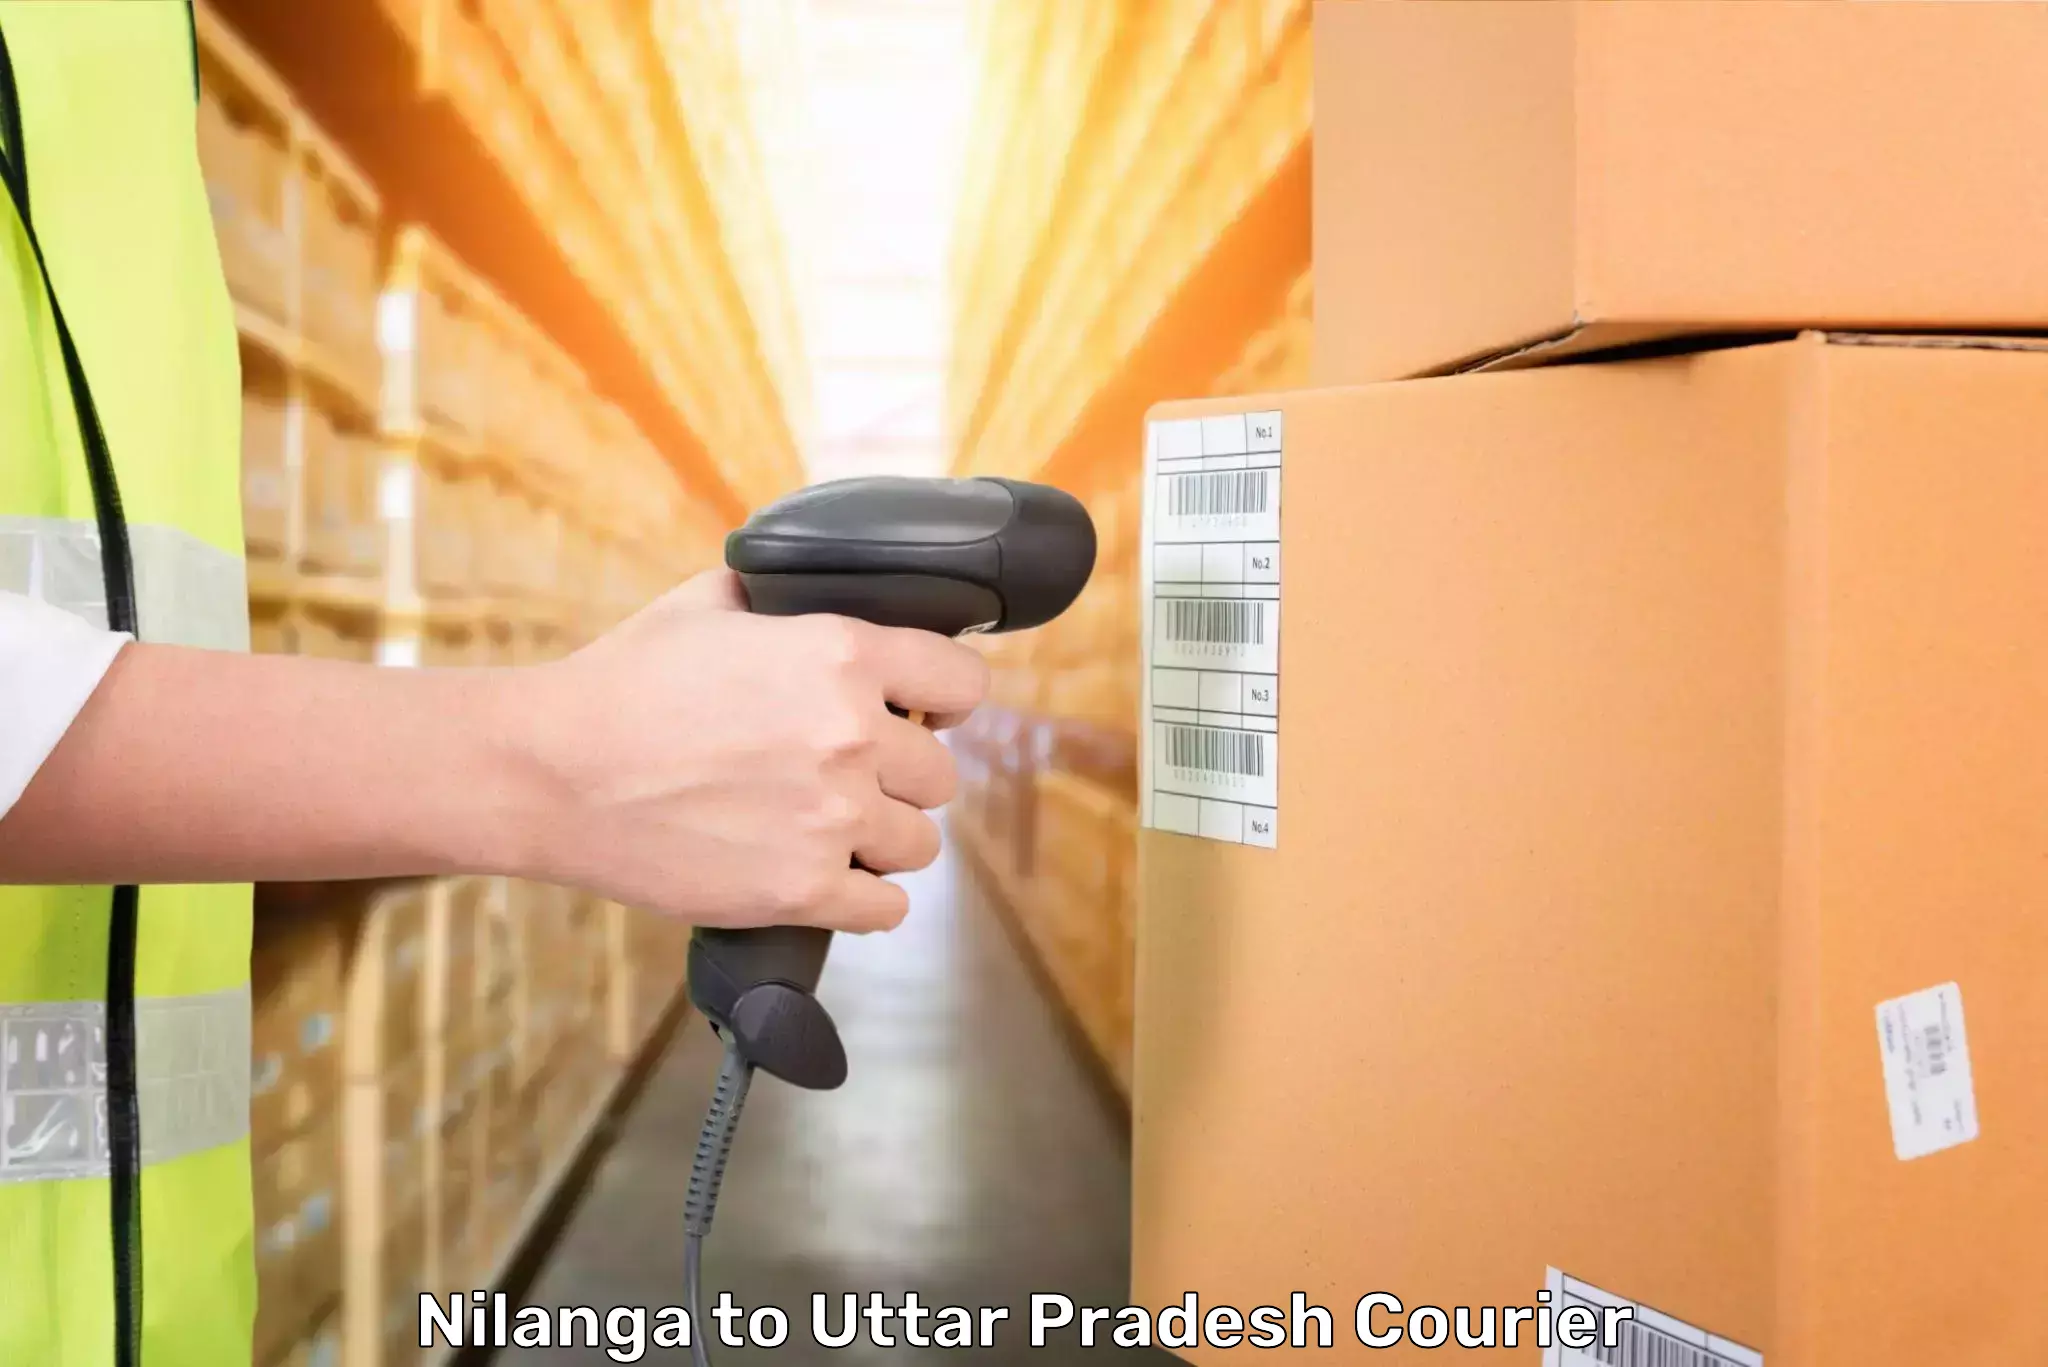 Luggage transport service Nilanga to Uttar Pradesh